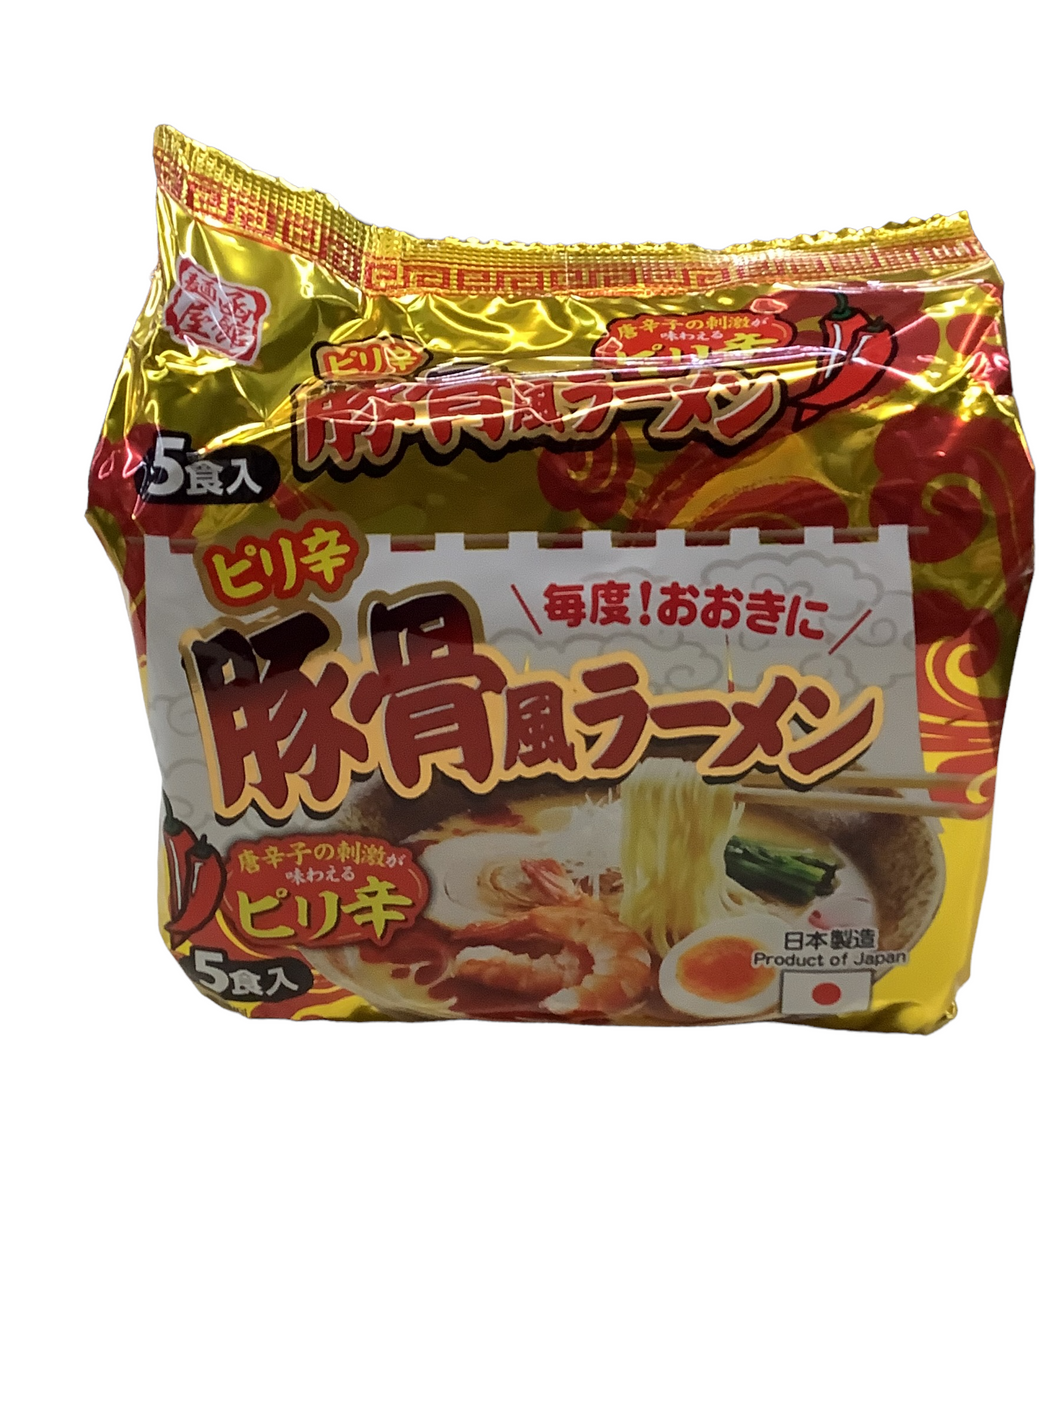 Hakodate Spicy Tonkotsu Ramen 5pk